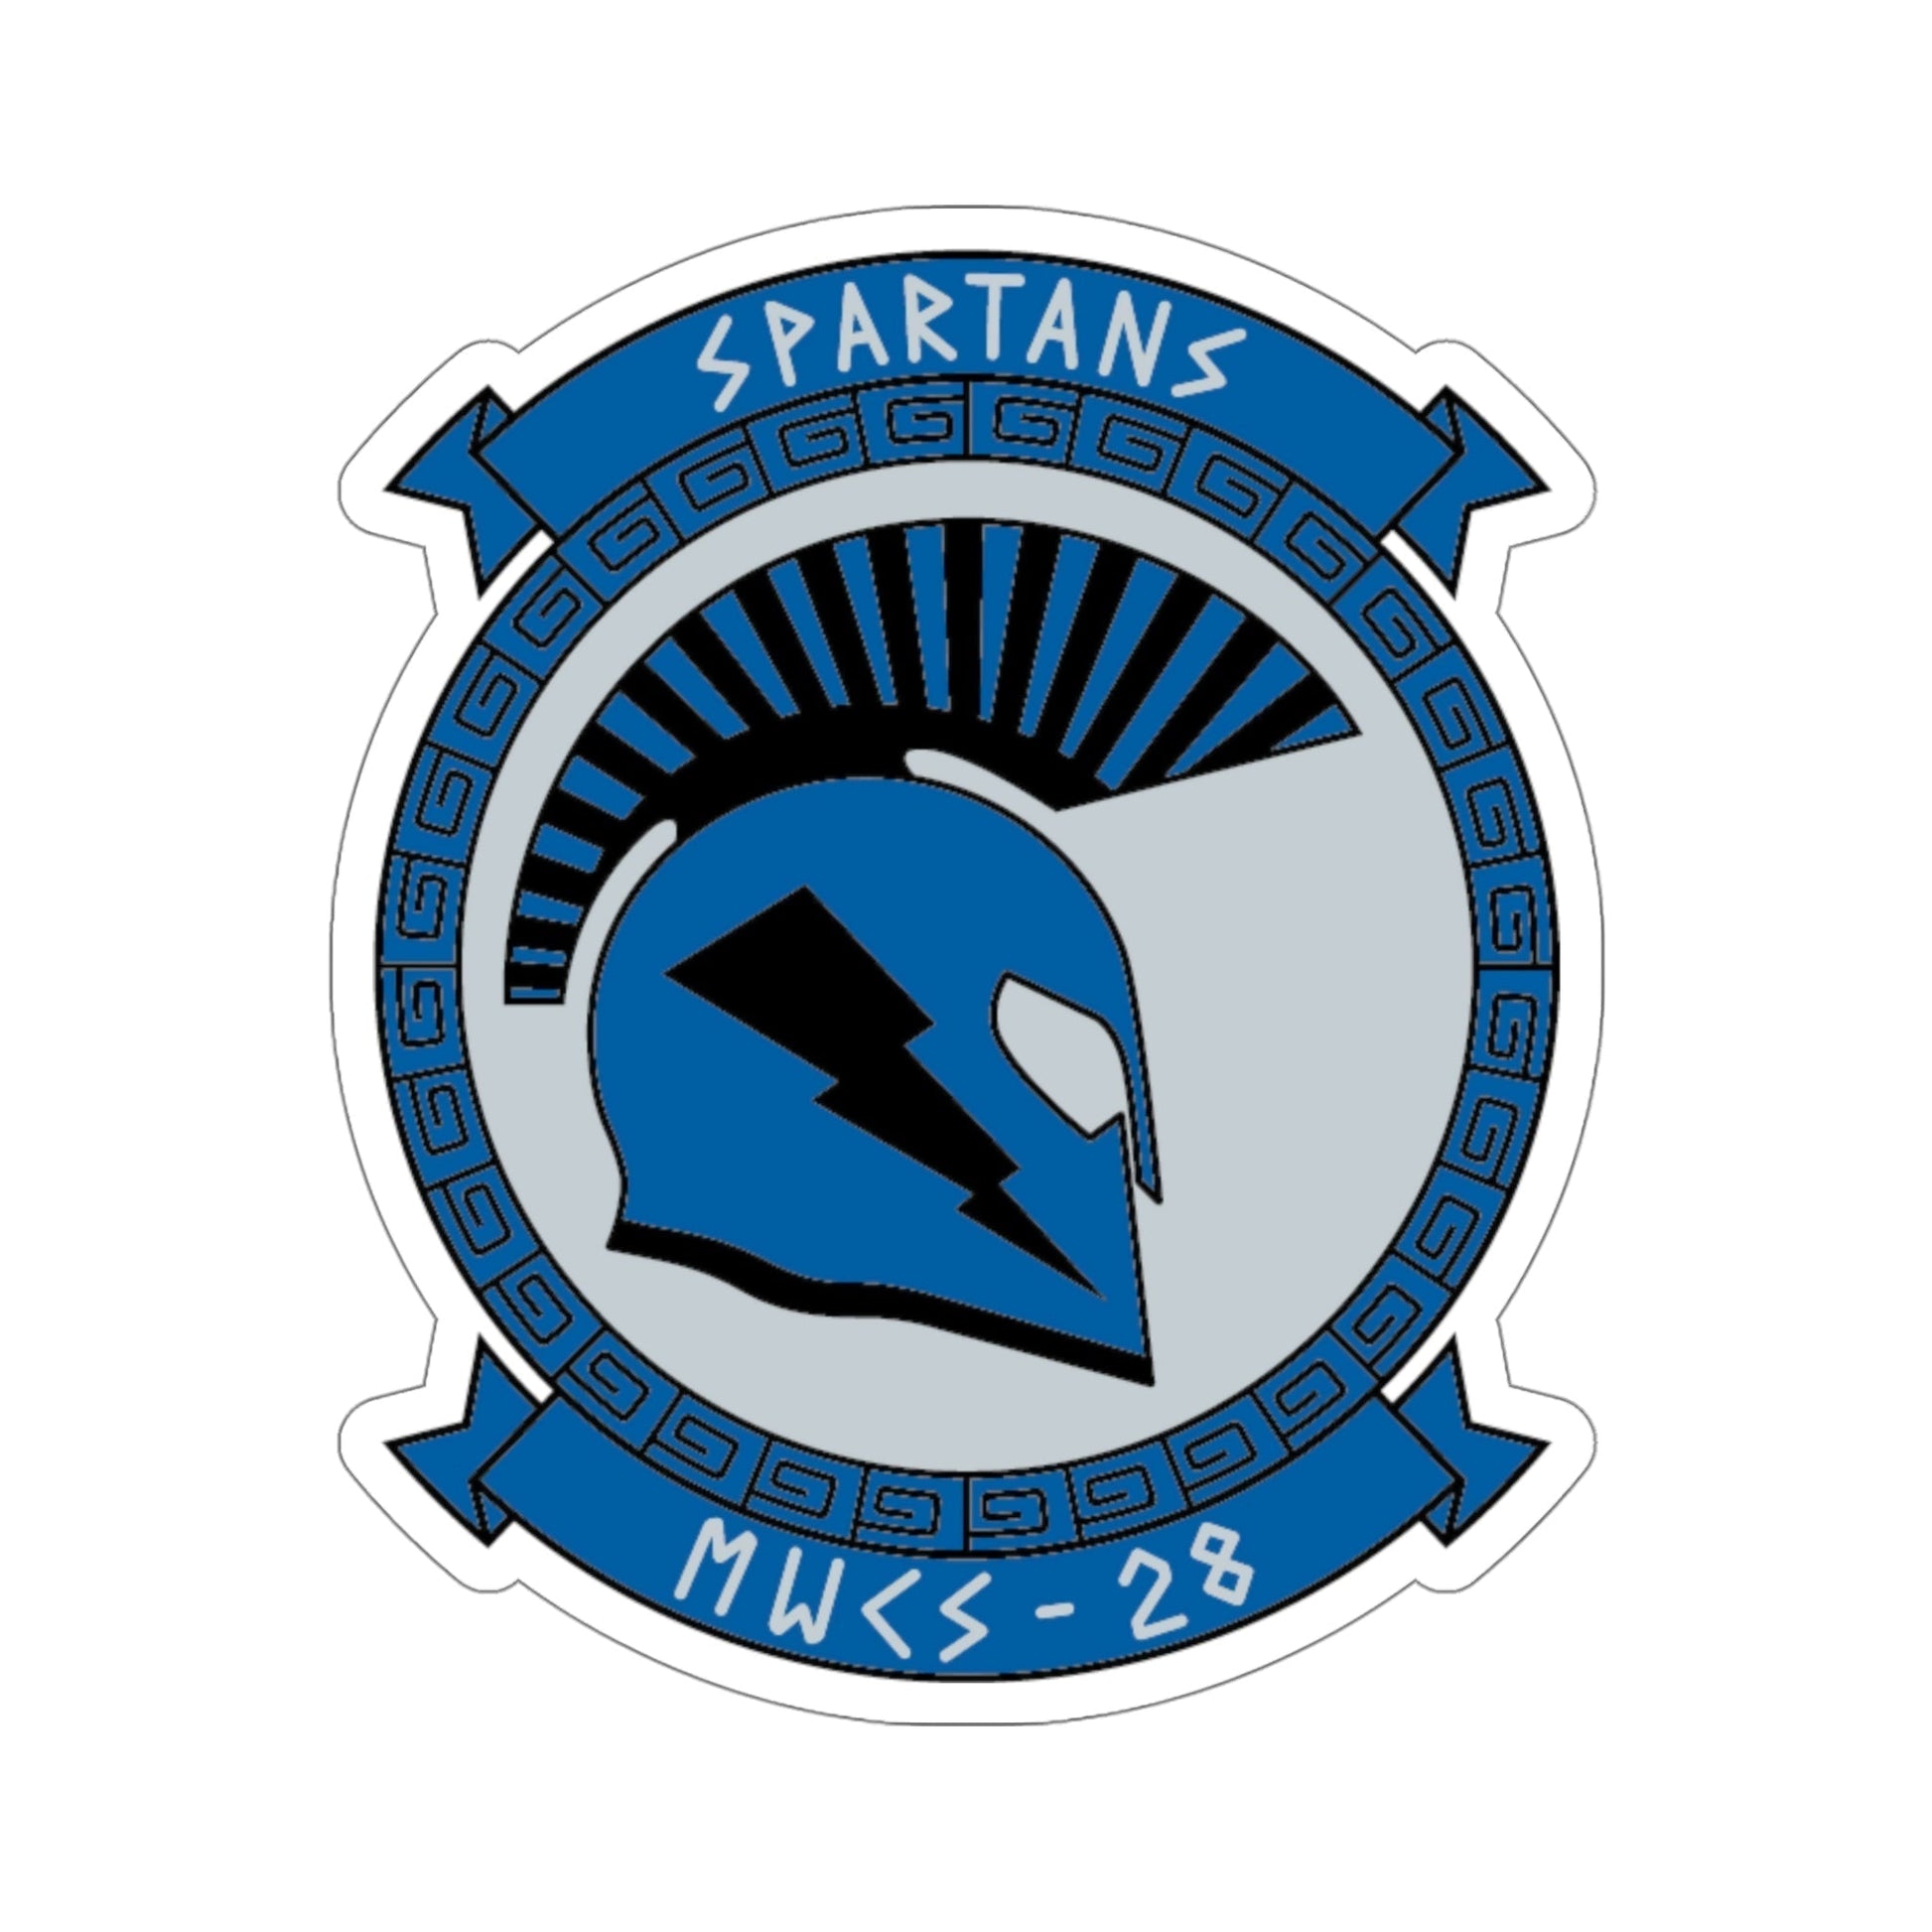 MWCS 28 Spartans (USMC) STICKER Vinyl Die-Cut Decal-5 Inch-The Sticker Space